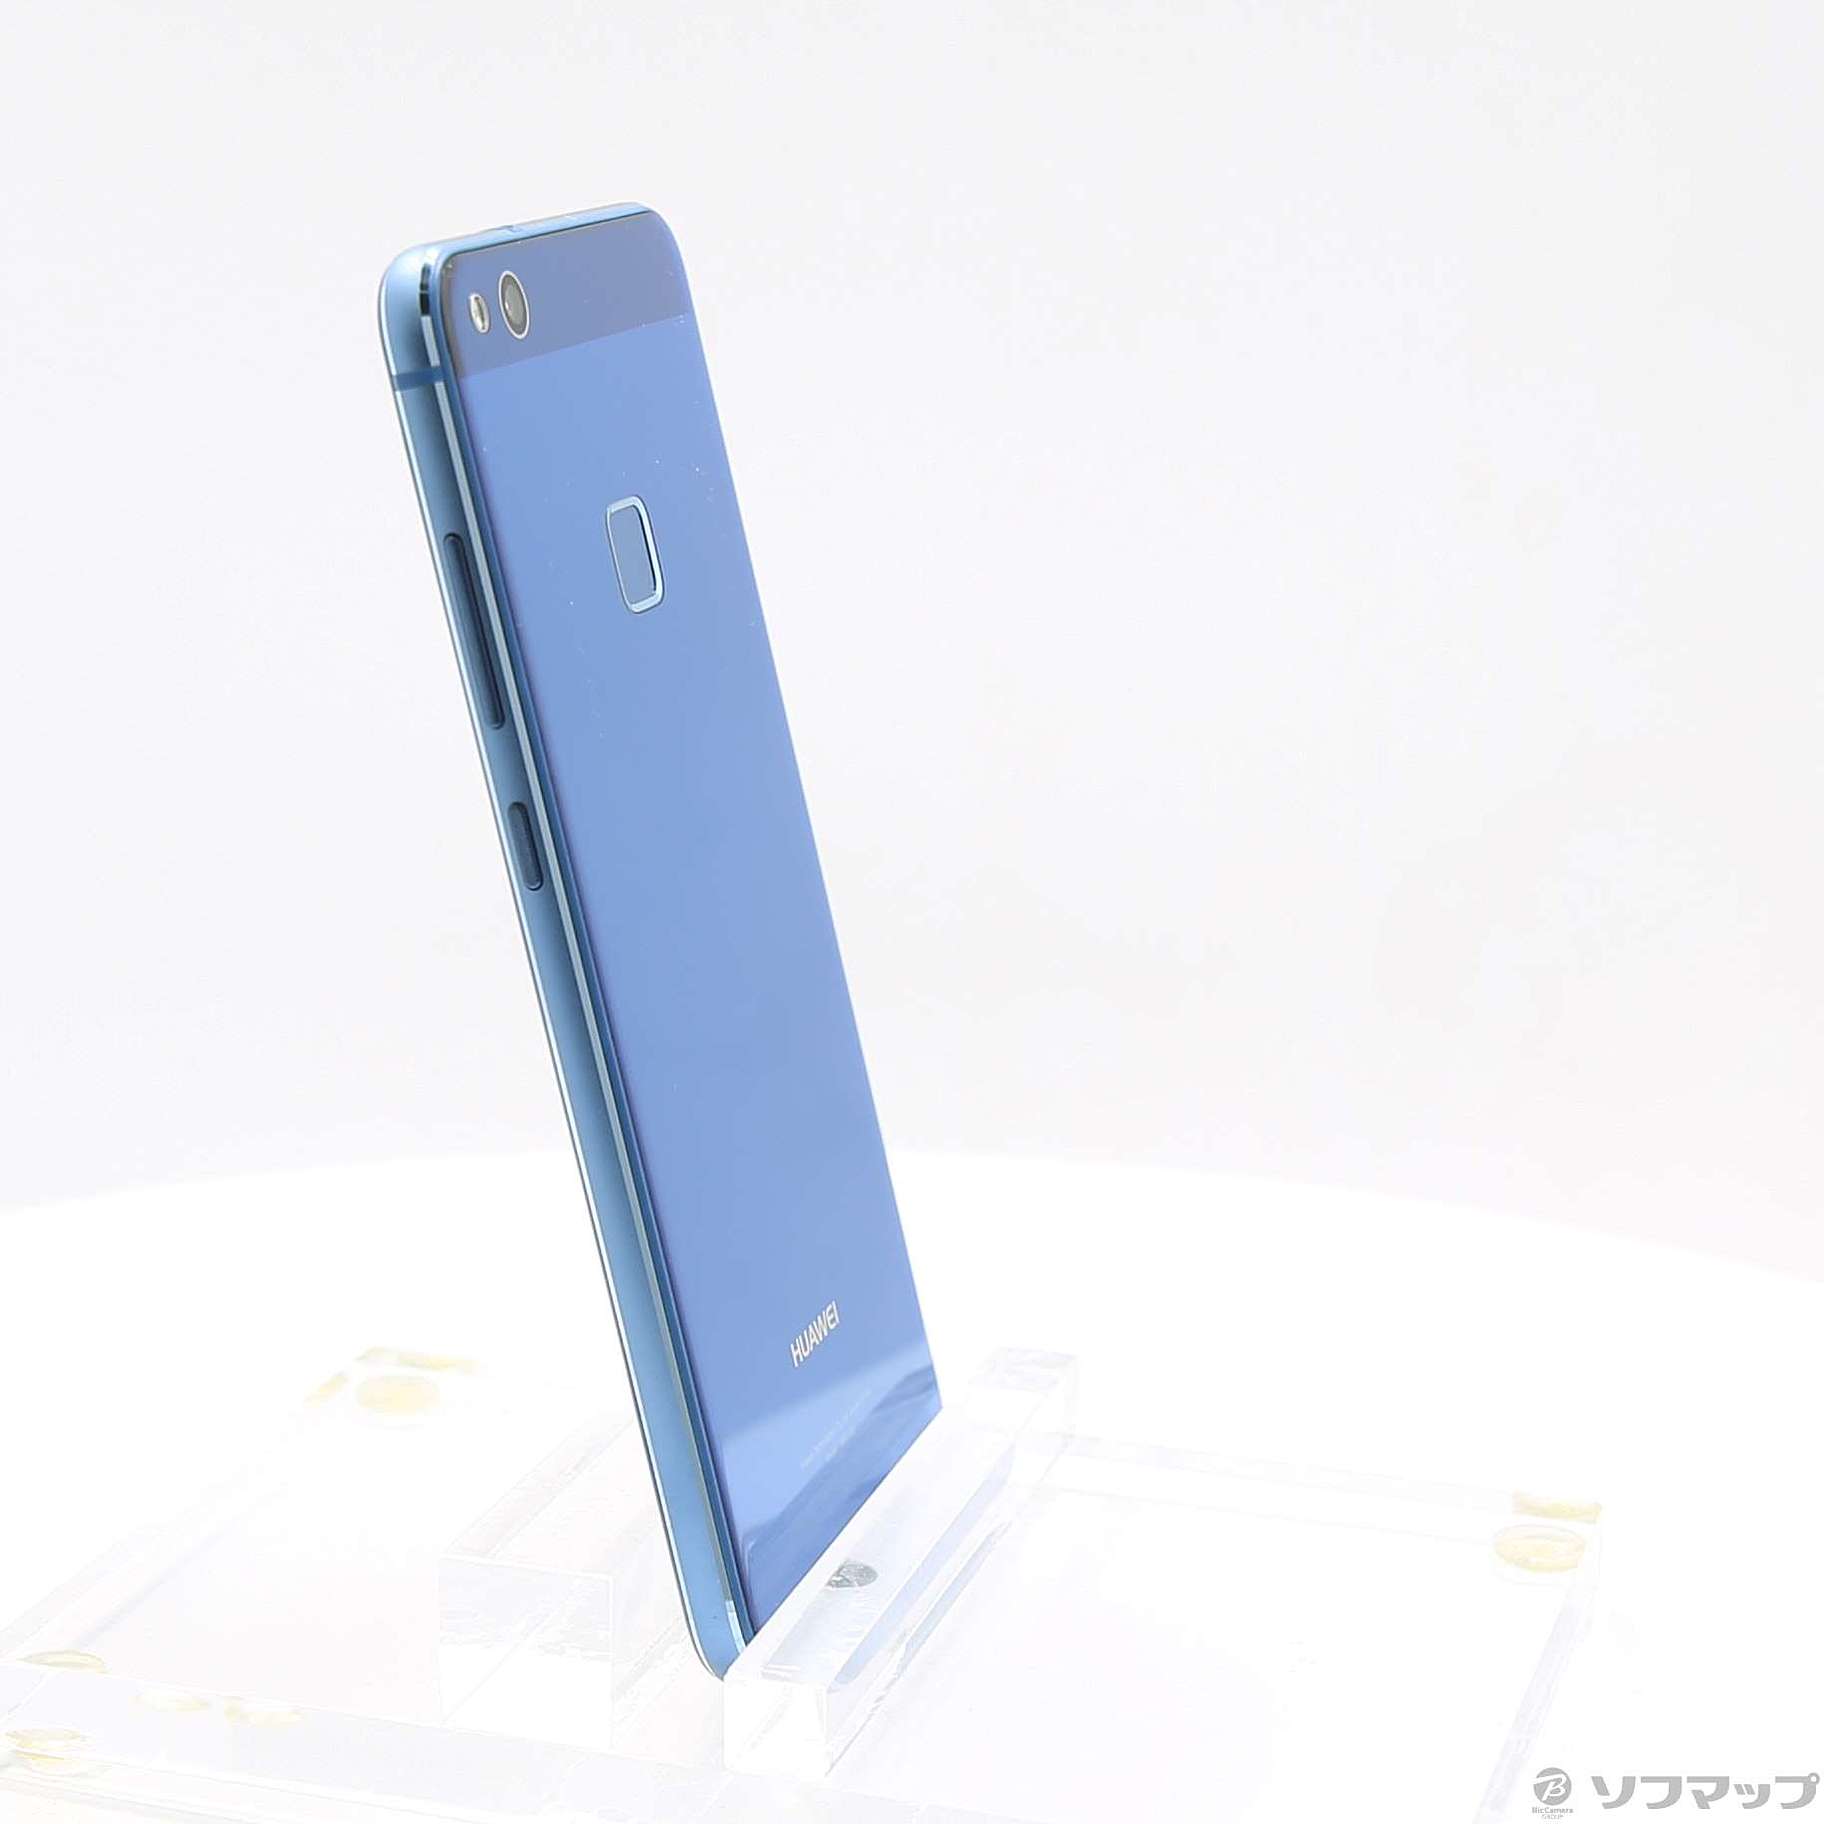 HUAWEI P10 lite Blue 32 GB UQ mobile - スマートフォン本体